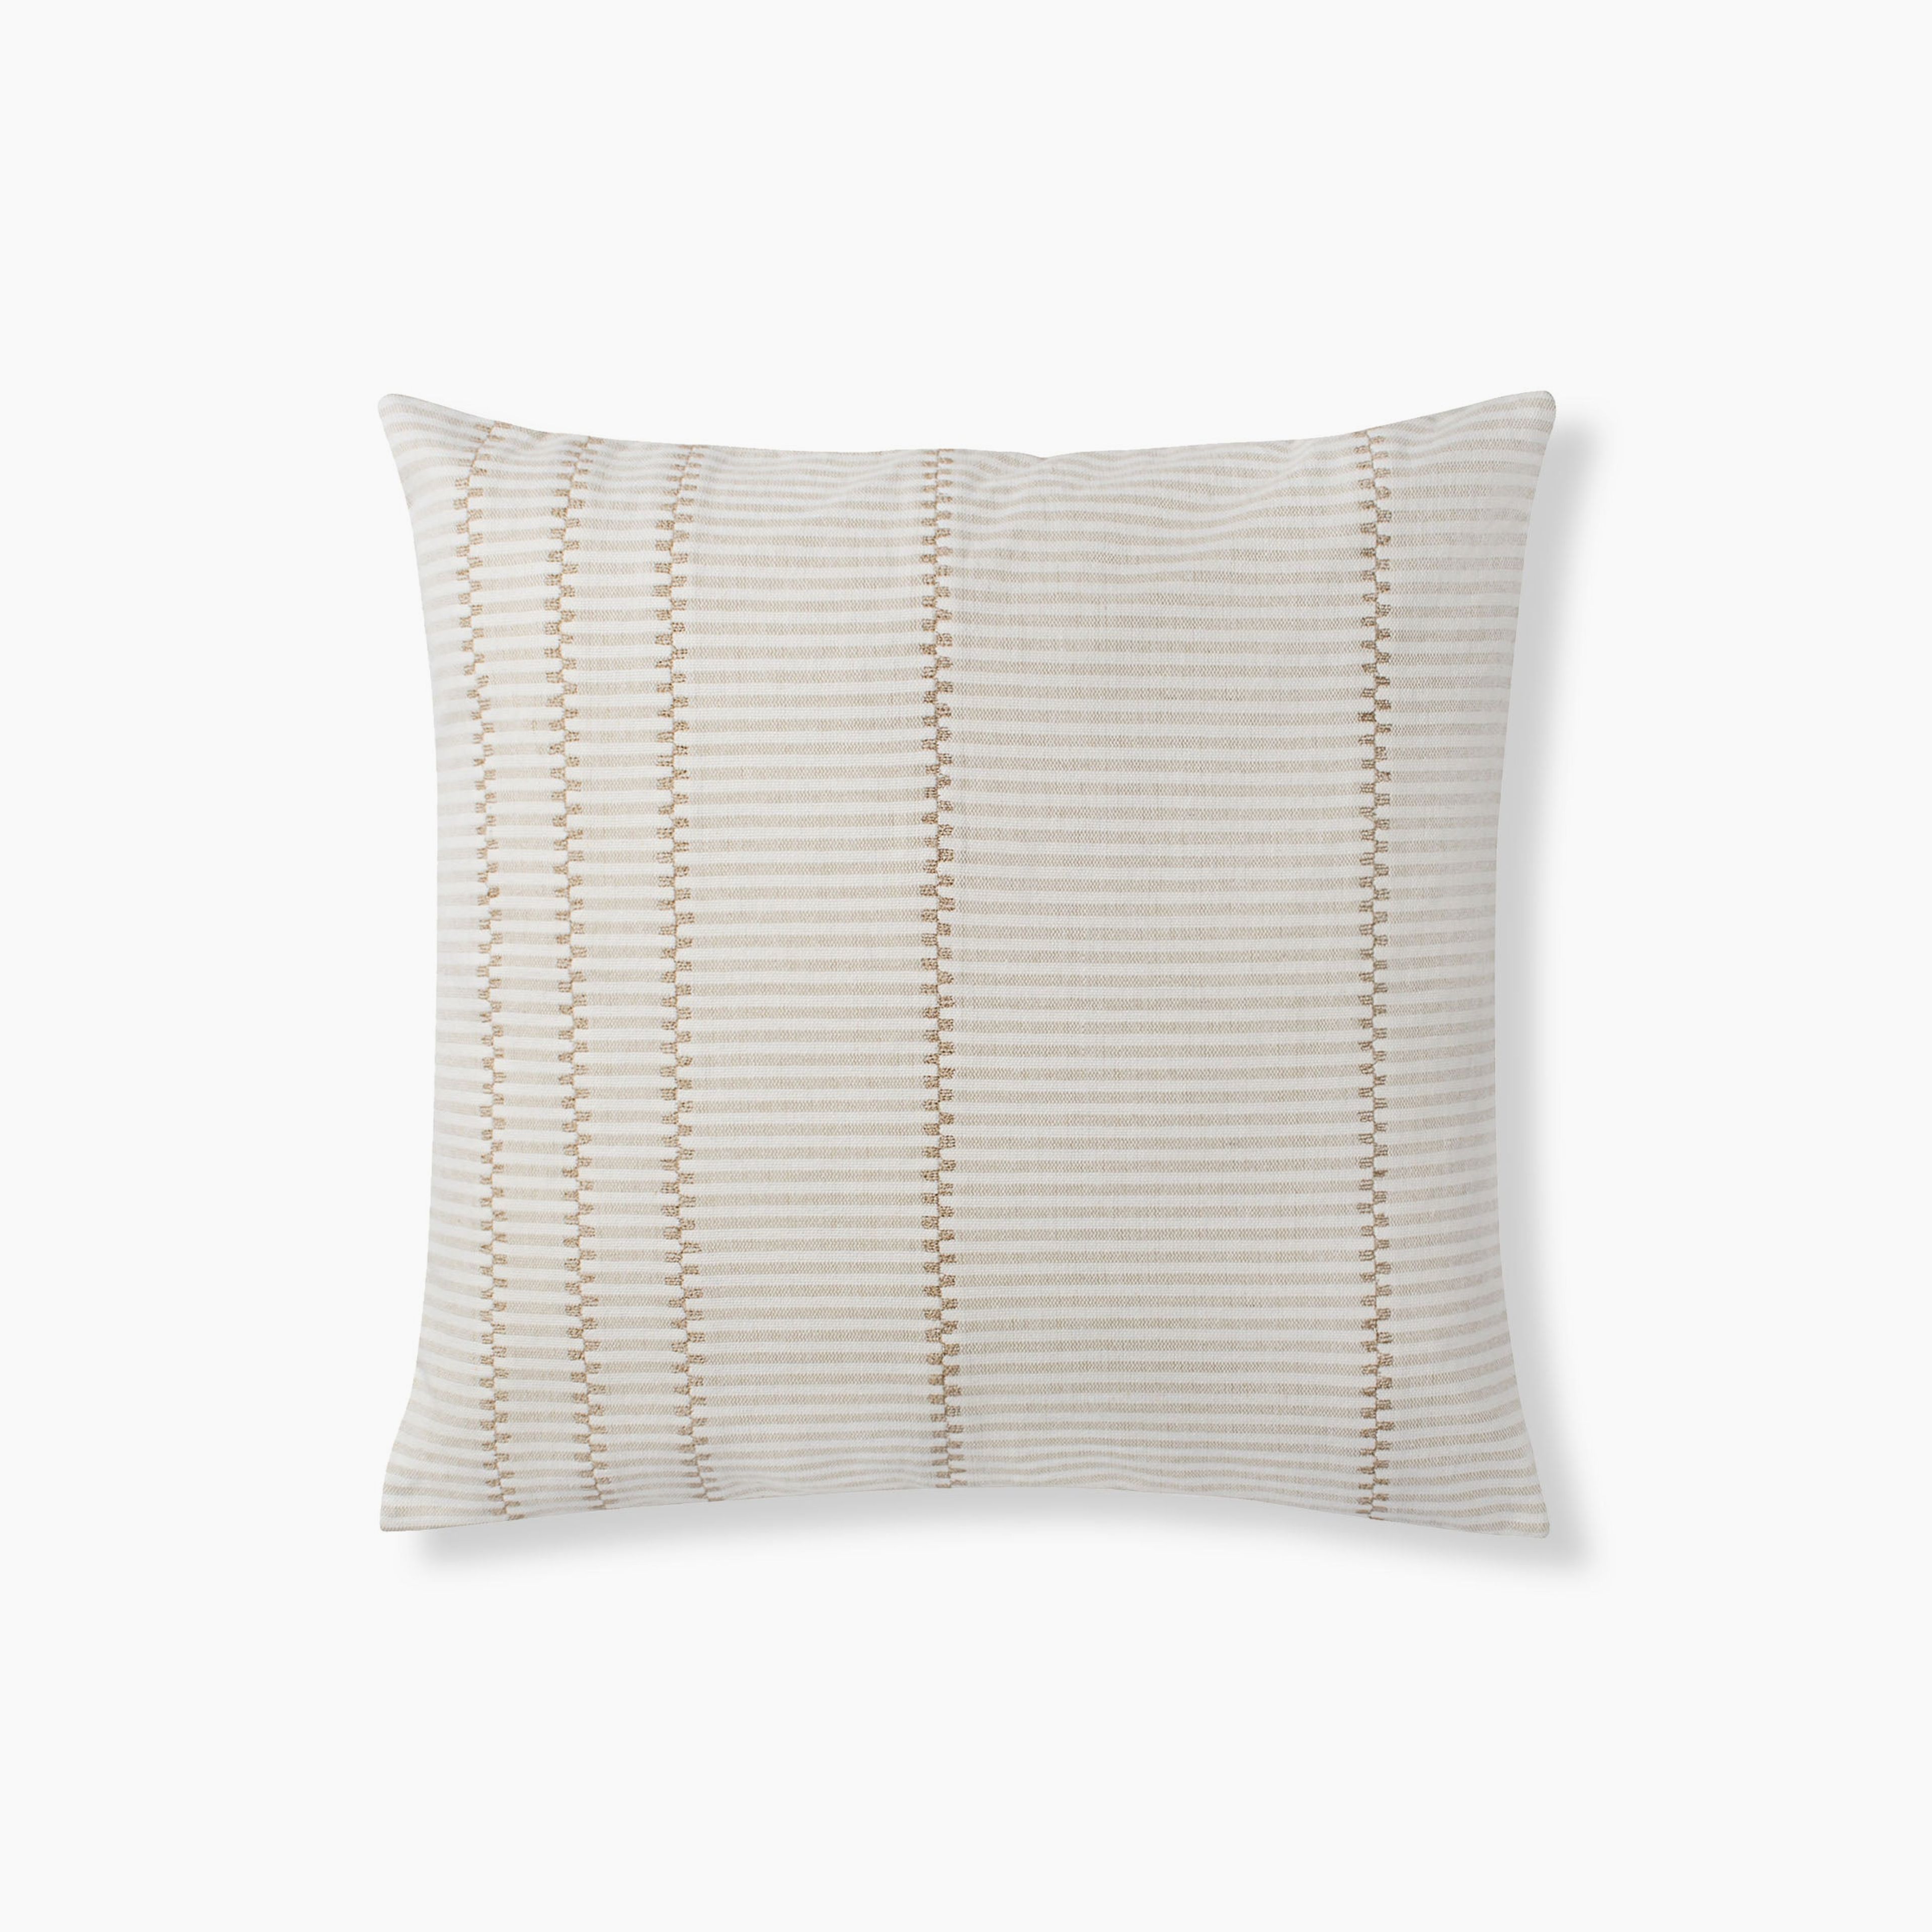 Paloma Stripe Pillow